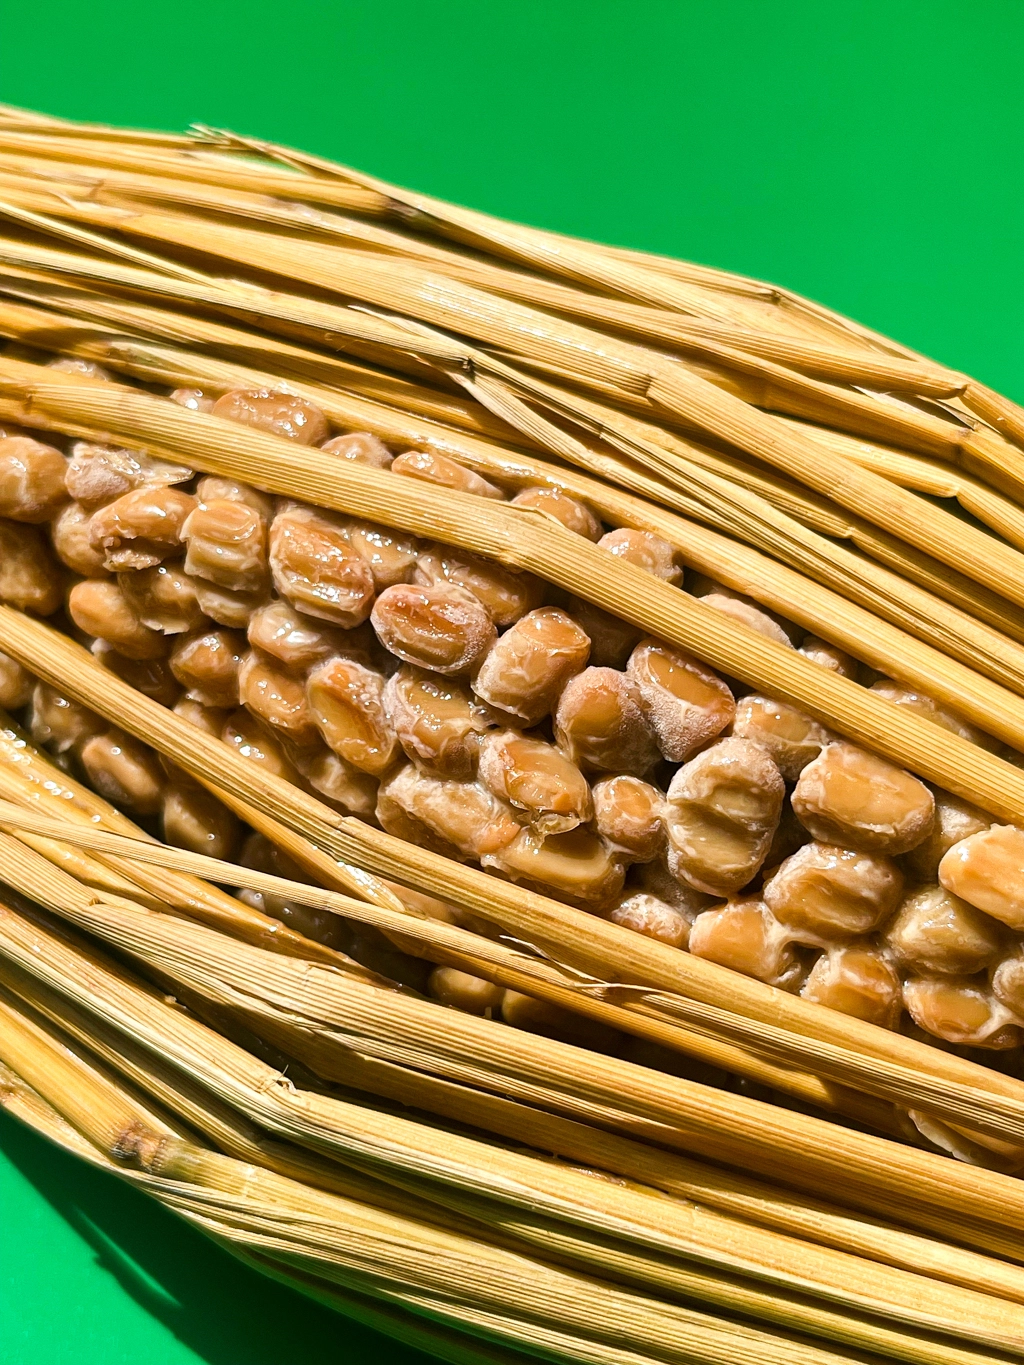 藁で包まれた納豆のクローズアップでとらえた作品。少しだけ開かれた藁の間から納豆の豆たちが見える。背景は鮮やかな緑。